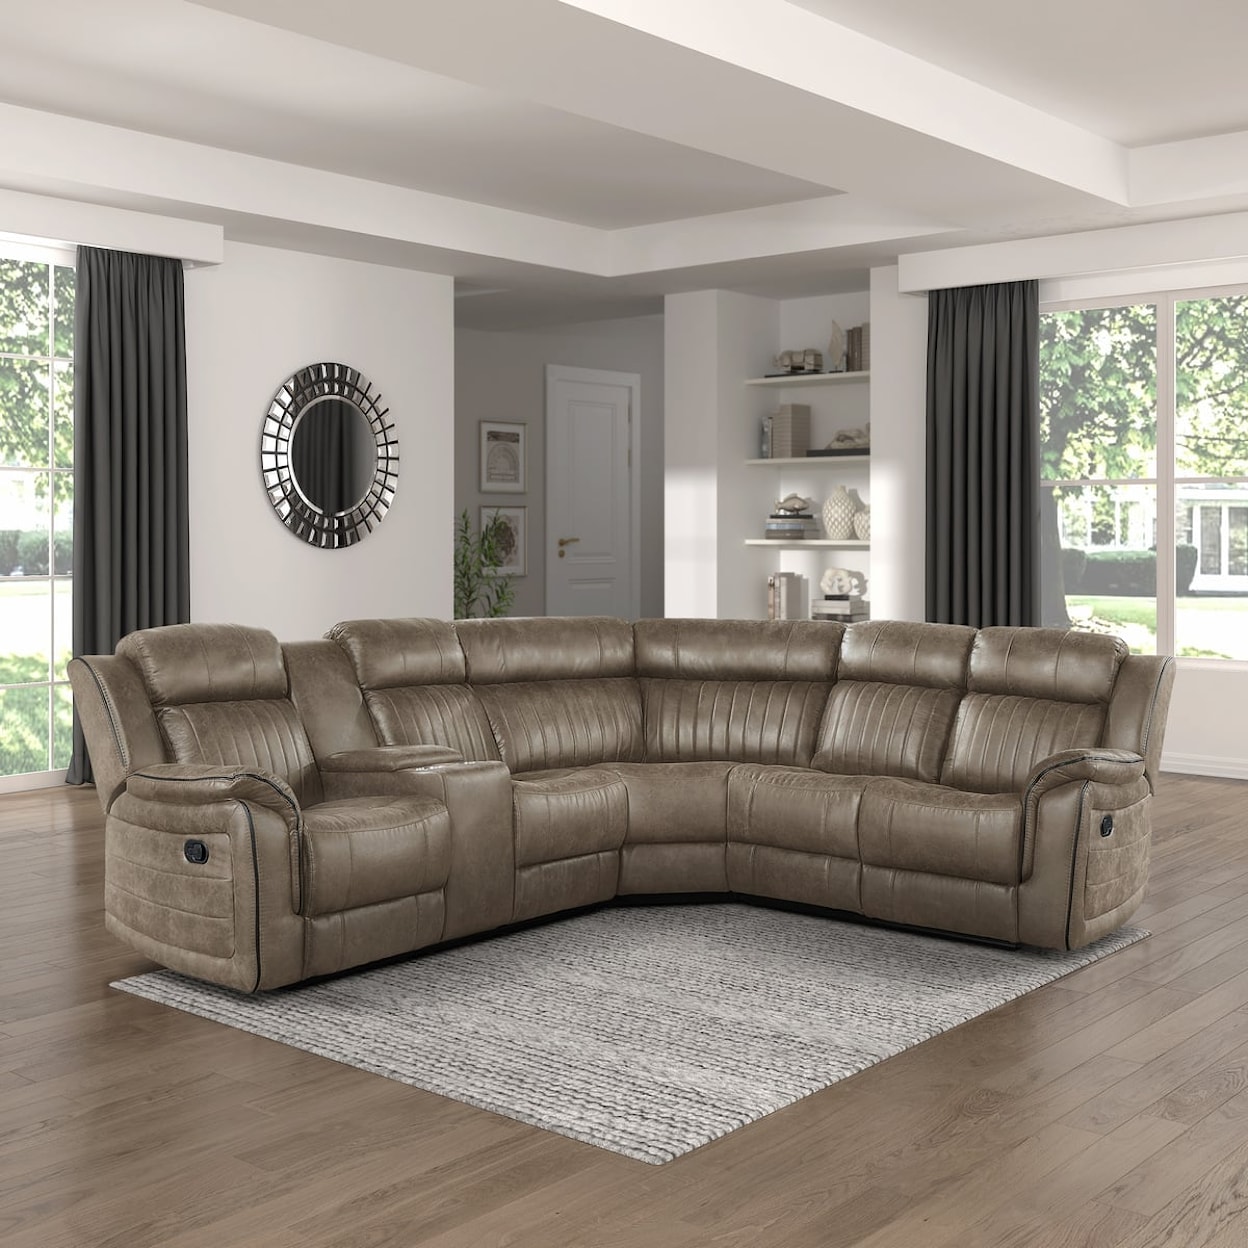 Homelegance Furniture Centeroak 3-Piece Reclining Sectional